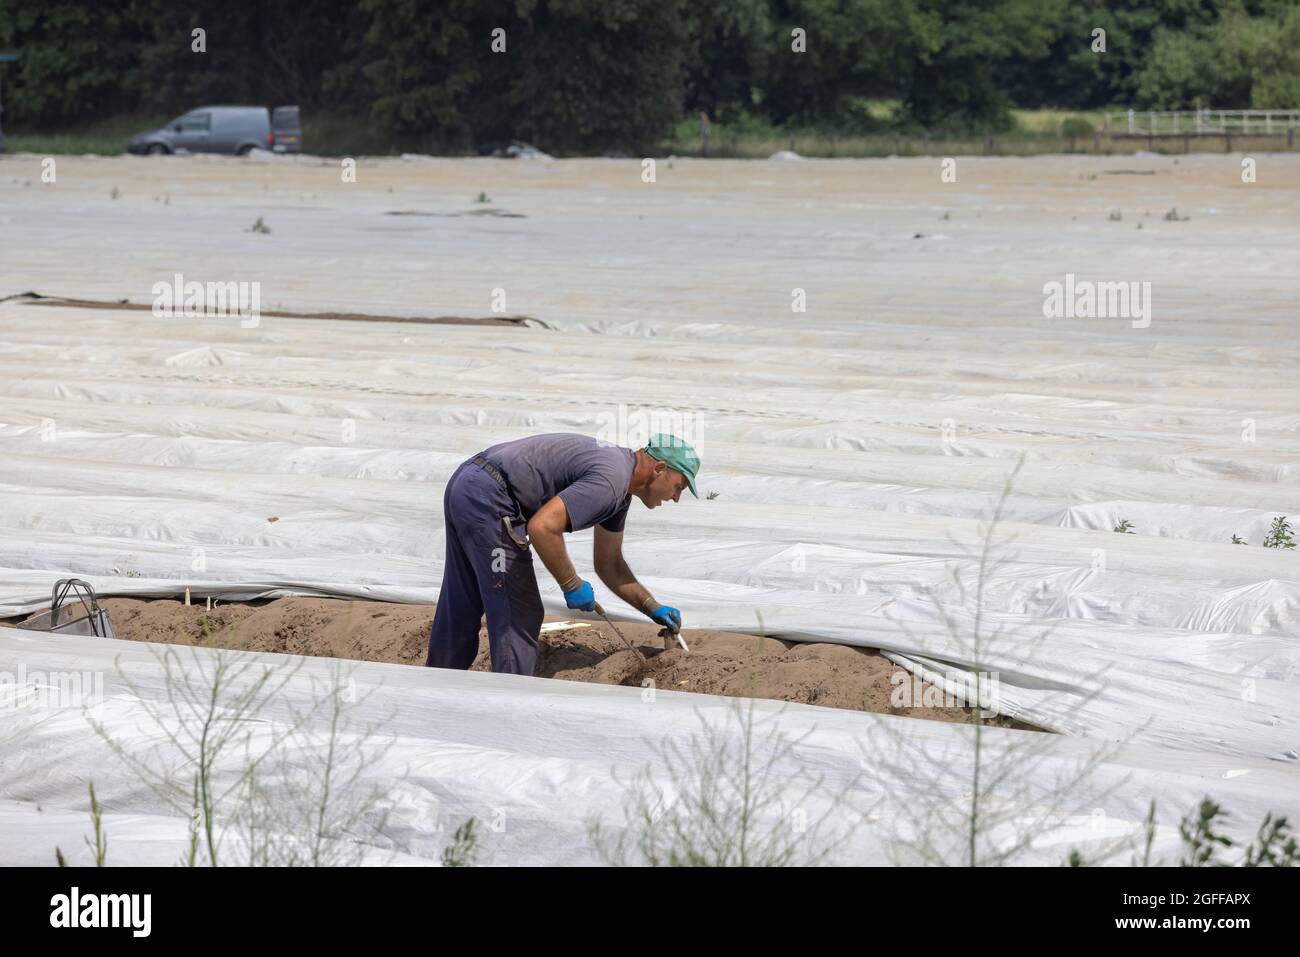 Lottum, Niederlande - 19. Juni 2021: Saisonarbeiter beschäftigt sich mit der Spargelernte in der niederländischen Agrarlandschaft Stockfoto